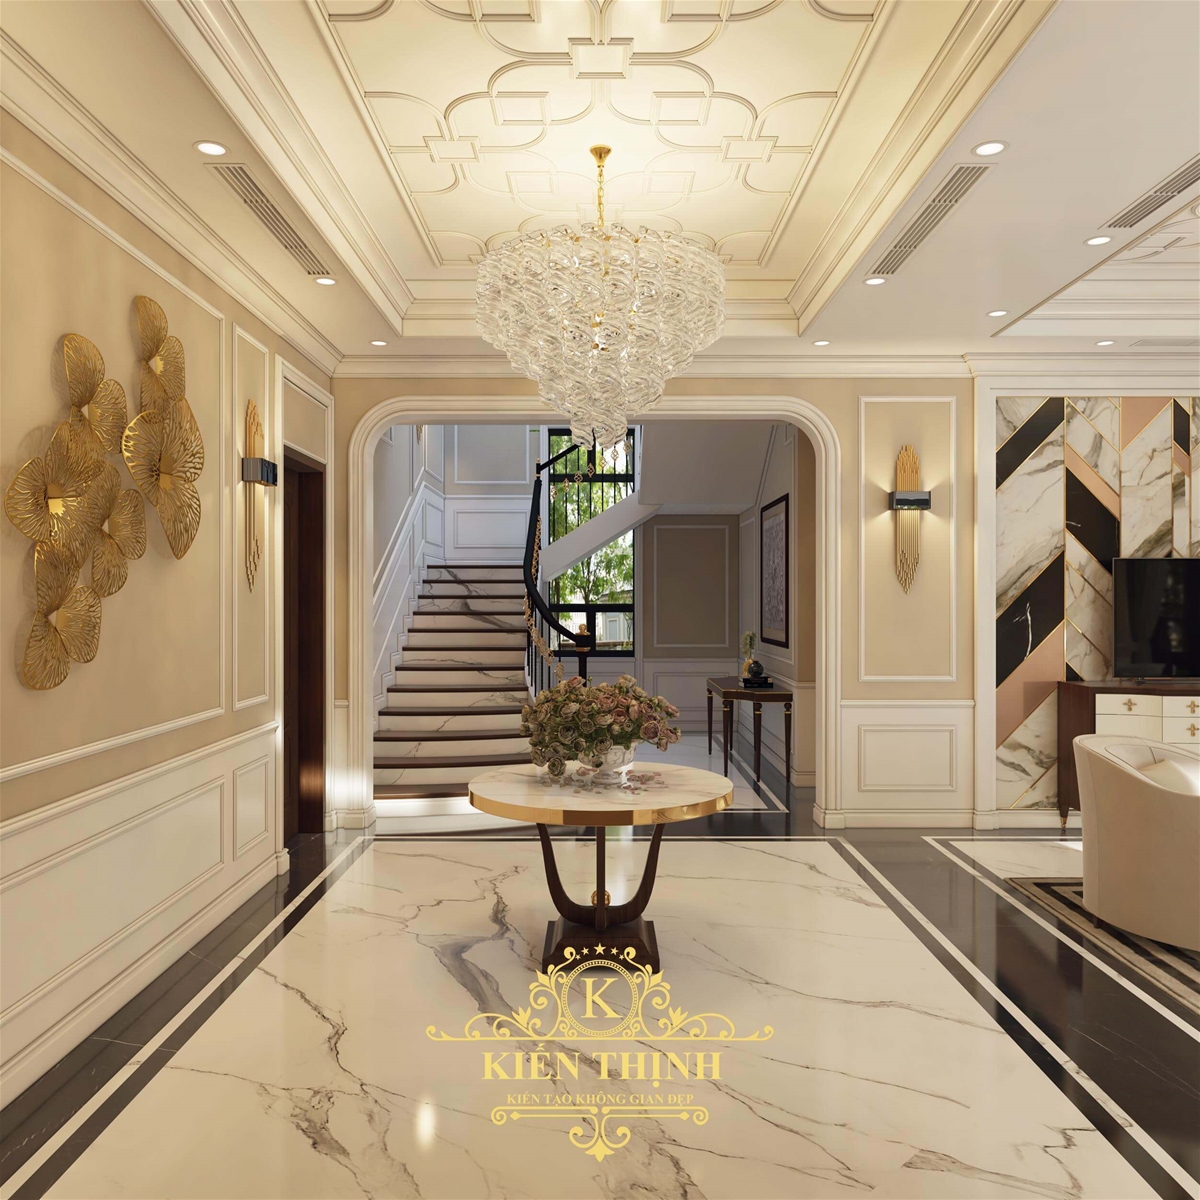  Mẫu thiết kế nội thất phòng khách biệt thự vườn phong cách hiện đại 2 tầng đẹp gây thương nhớ tại Quảng Trịt